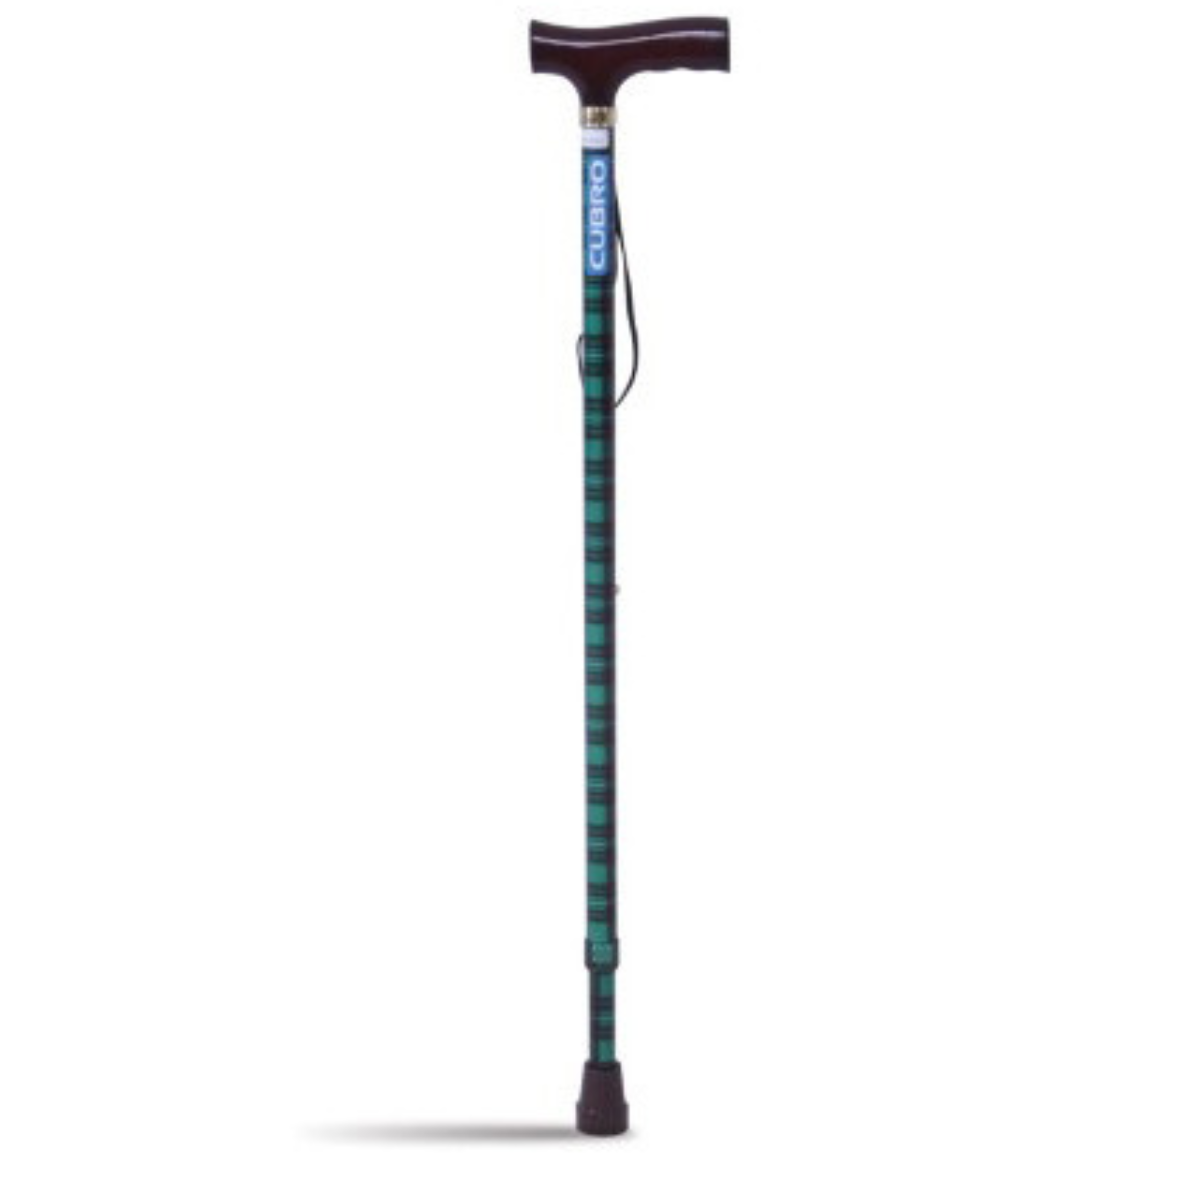 Strider Fashion T-handle walking stick